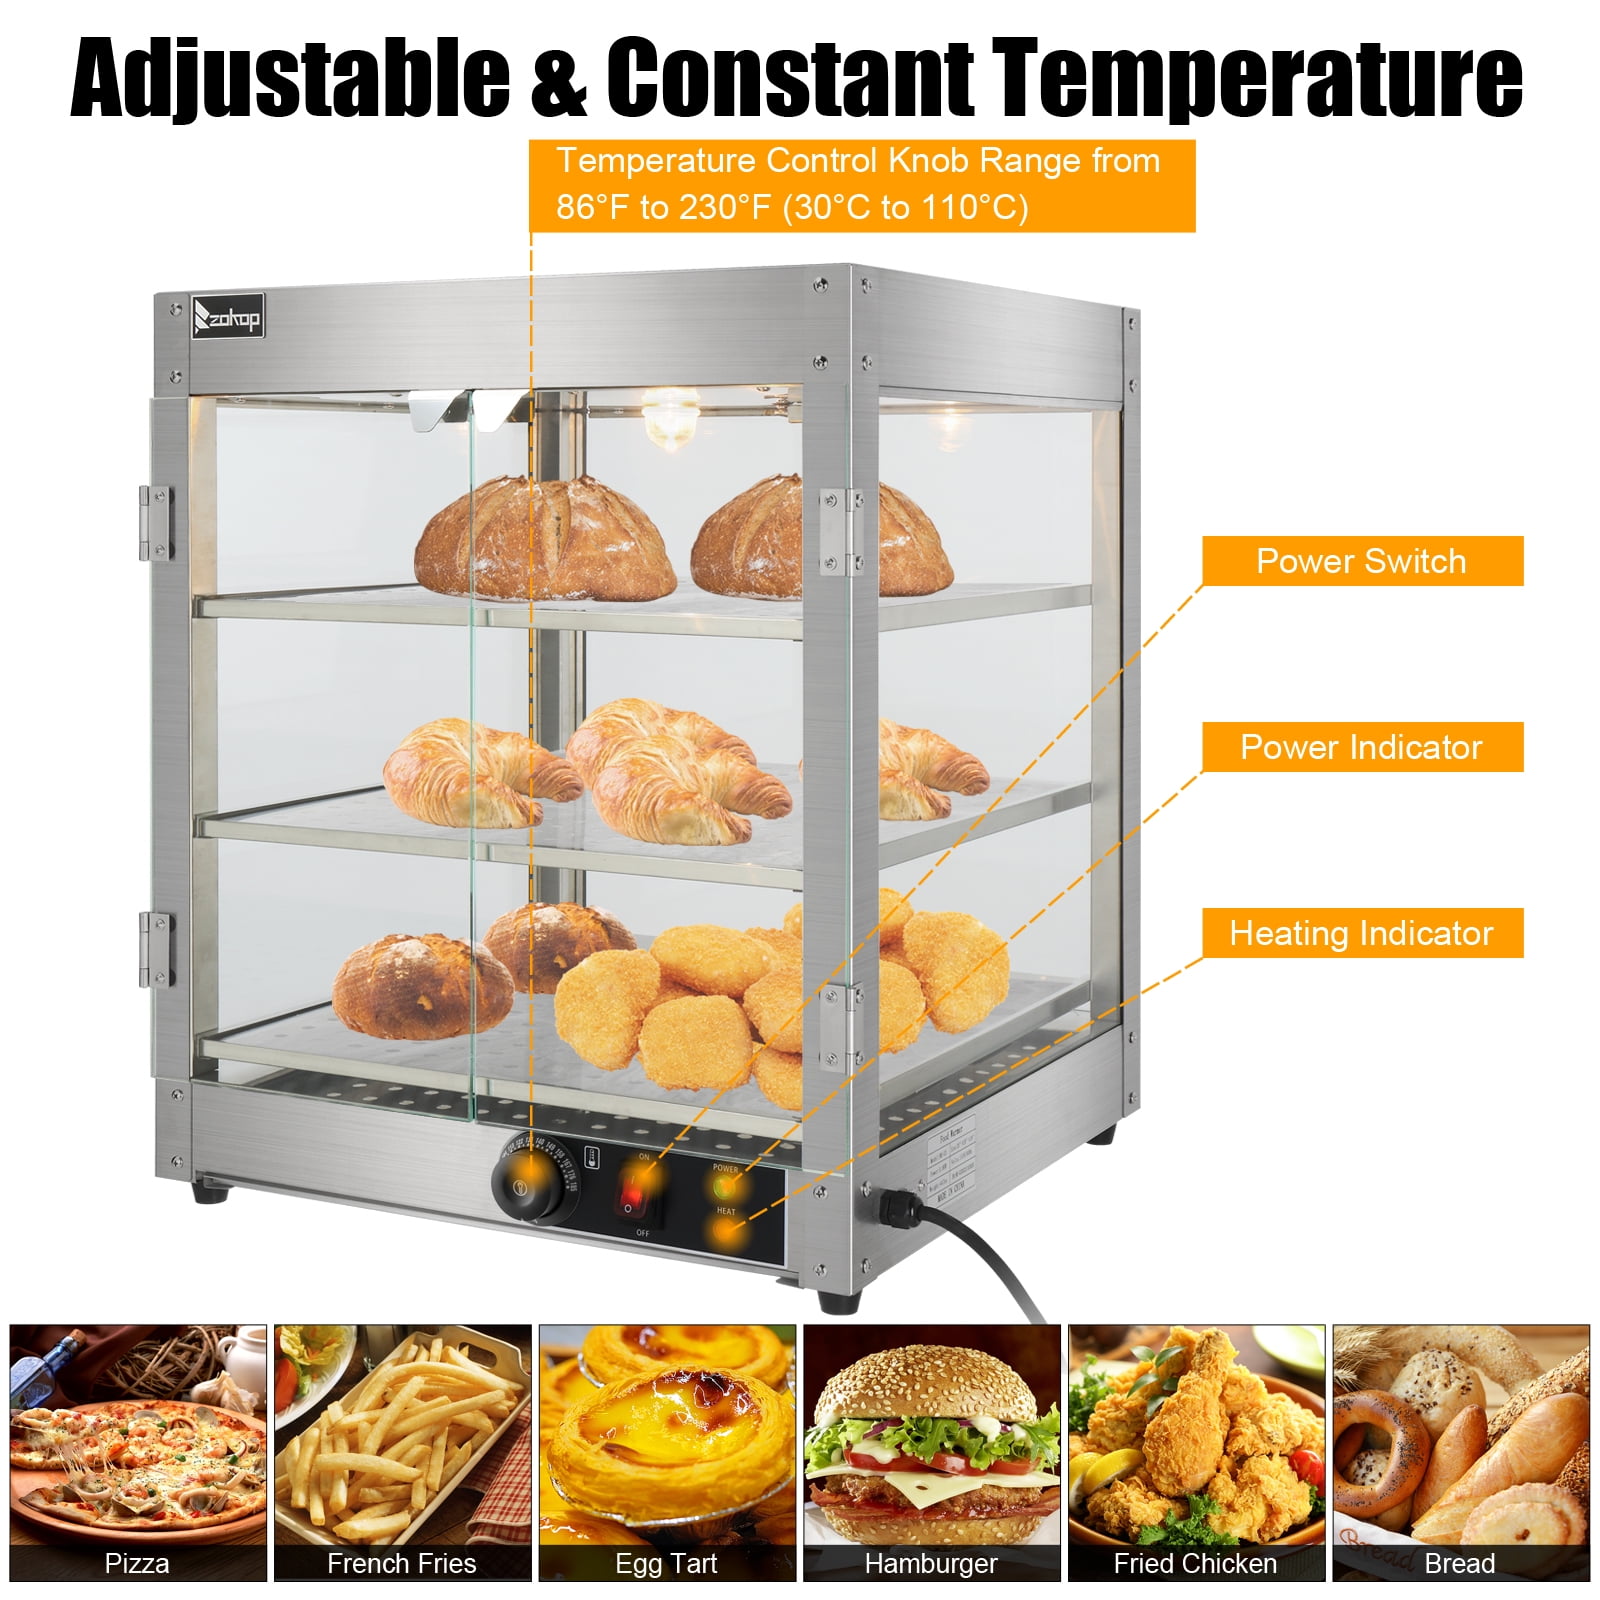 Food warmer, Snacks Warmer, Hot Case Warmer